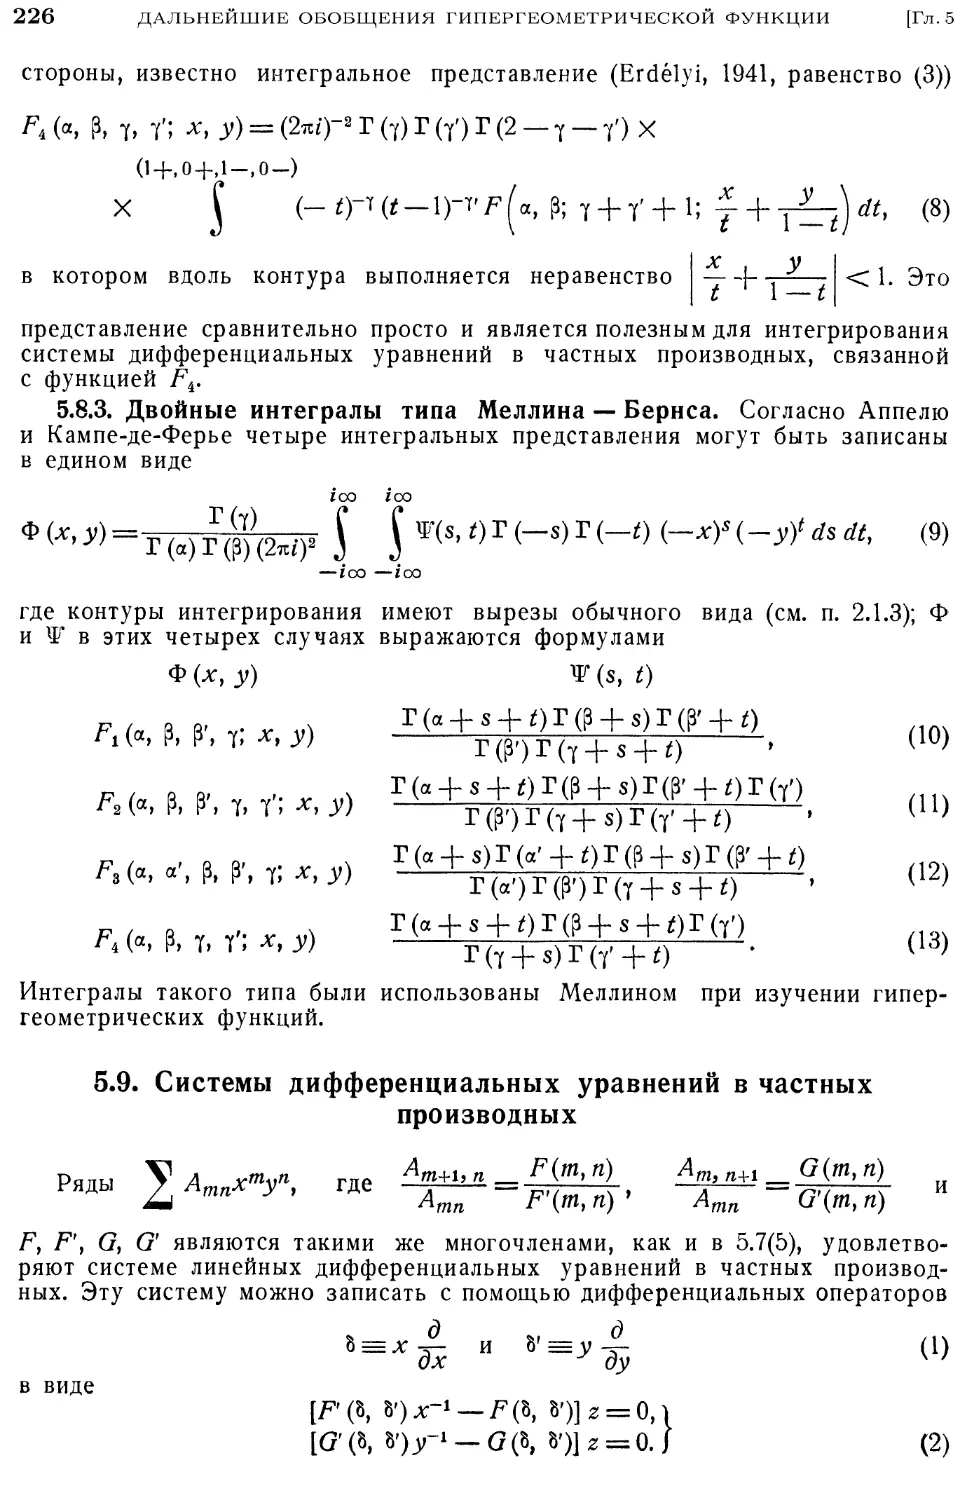 5.8.3. Двойные интегралы типа Меллина-Бернса
5.9. Системы дифференциальных уравнений в частных производных